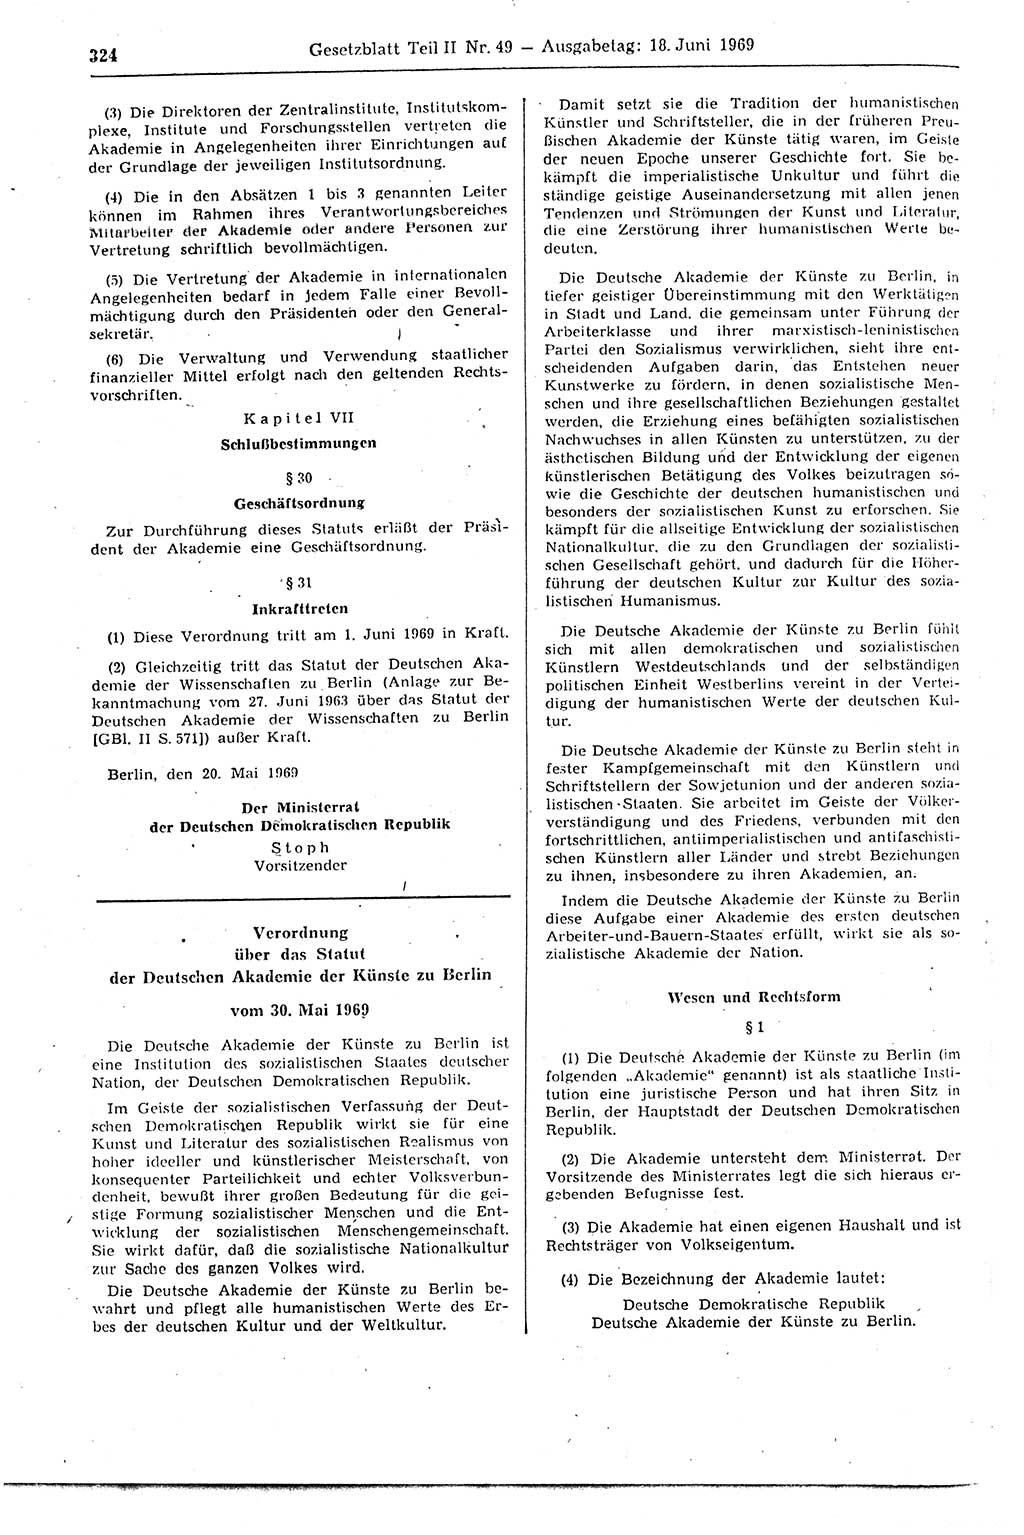 Gesetzblatt (GBl.) der Deutschen Demokratischen Republik (DDR) Teil ⅠⅠ 1969, Seite 324 (GBl. DDR ⅠⅠ 1969, S. 324)